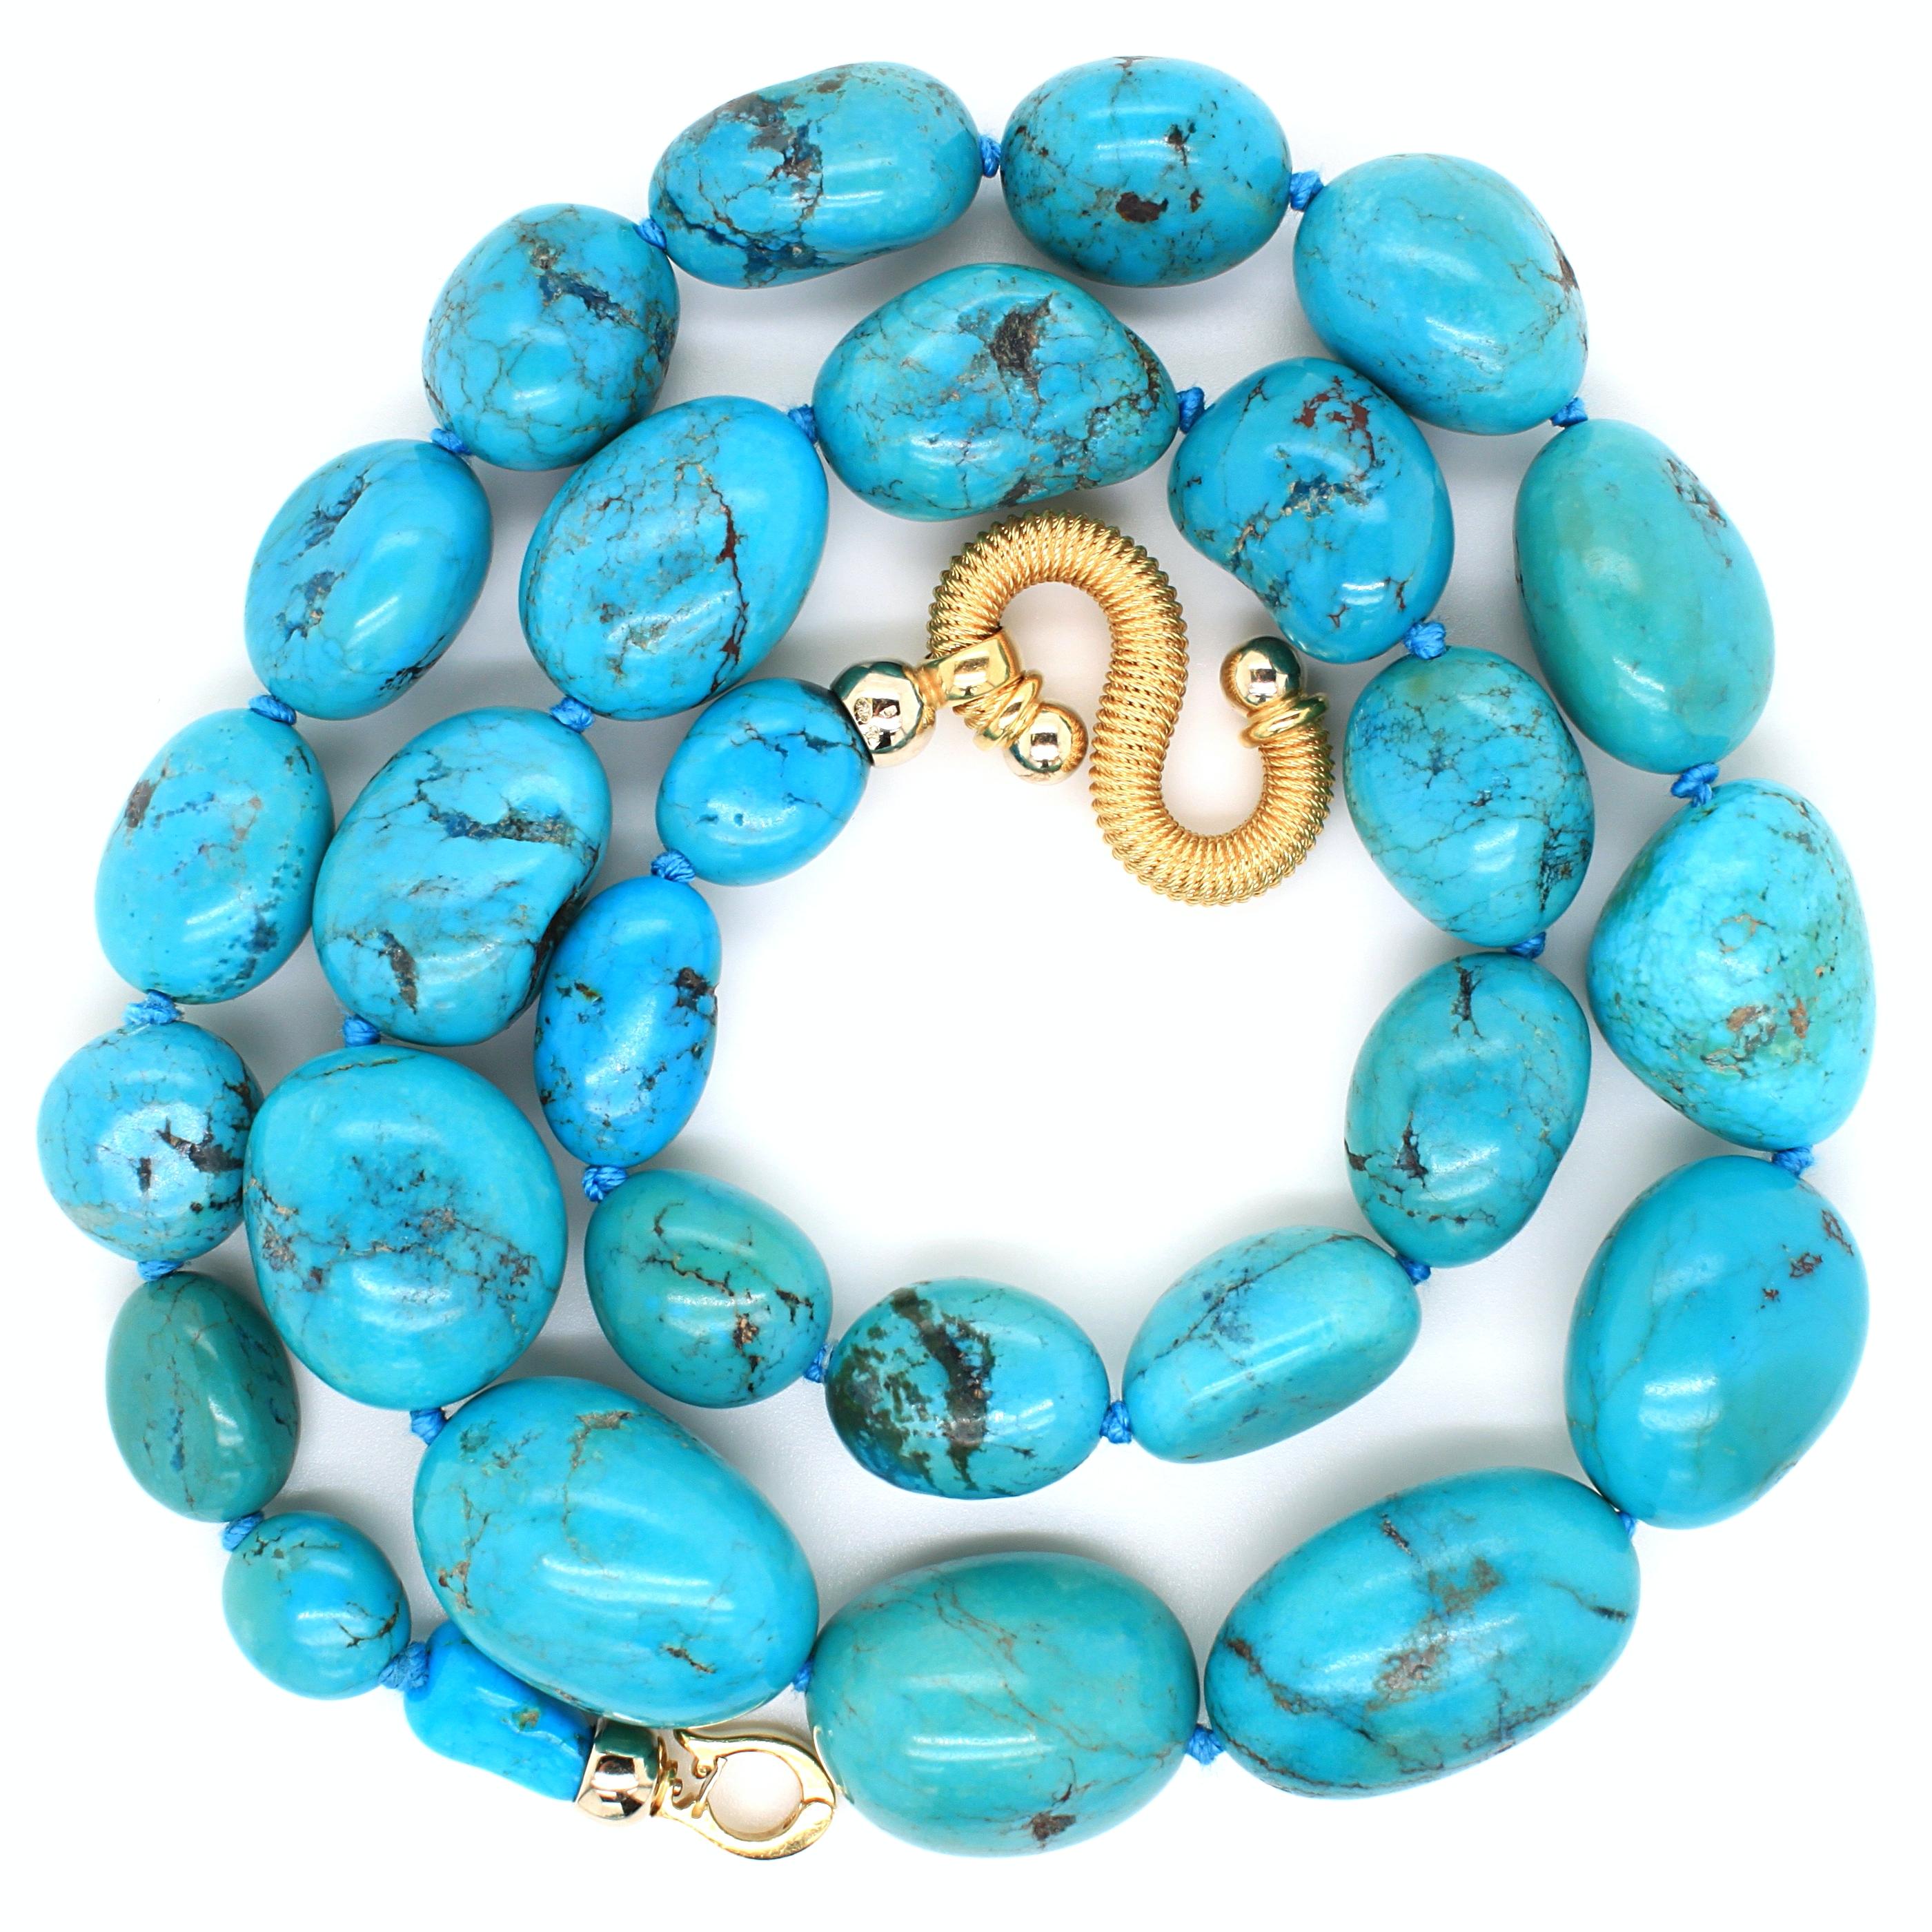 Collier de perles de turquoise avec un fermoir en or jaune 18 carats. Le collier est composé de 28 perles de turquoise persane graduées, d'une couleur magnifique et harmonieuse. Chaque turquoise présente une matrice naturelle unique. 
Le fermoir en